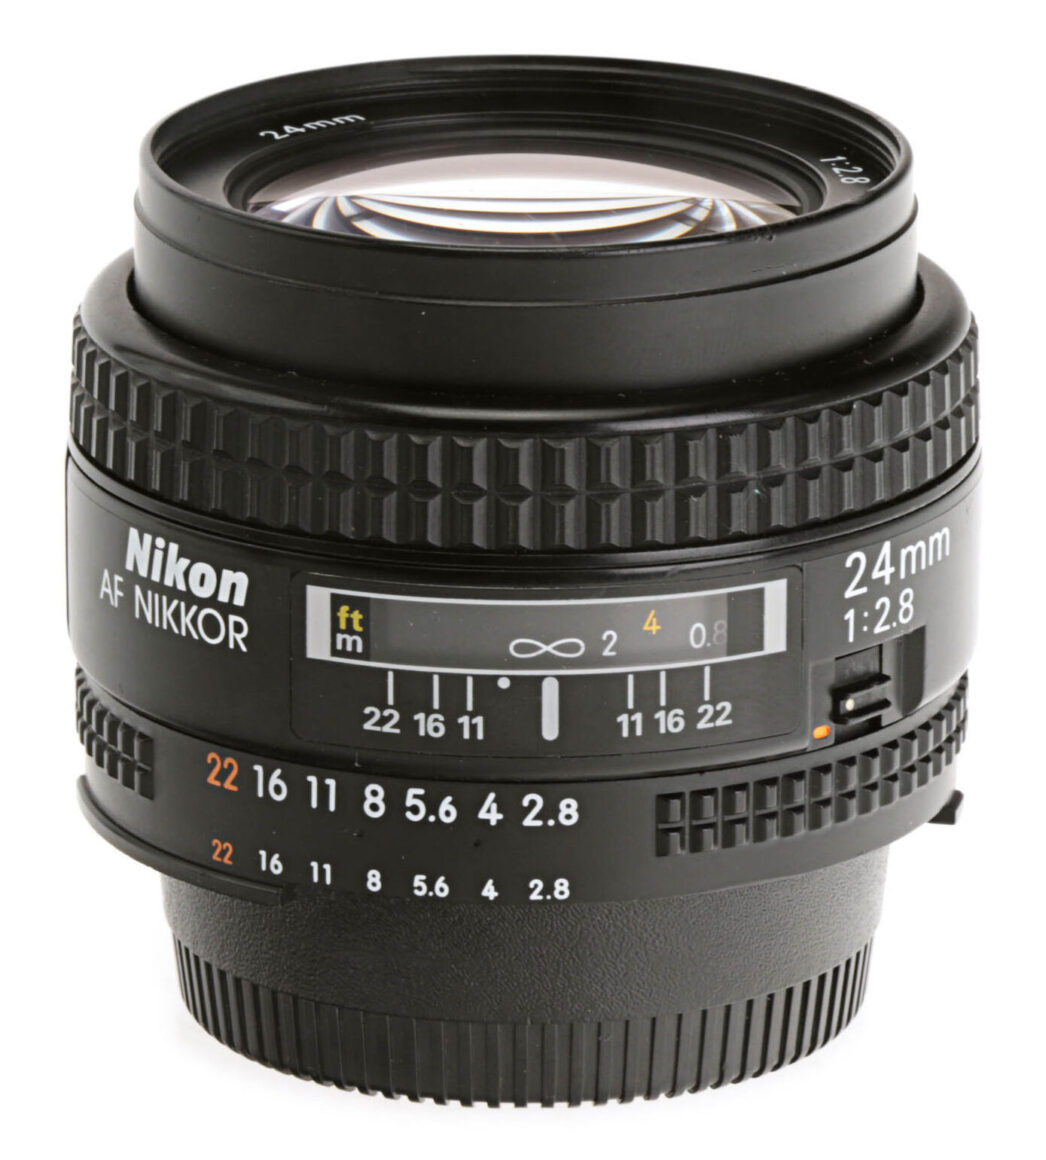 Nikon AF NIKKOR 24mm F/2.8 [II]